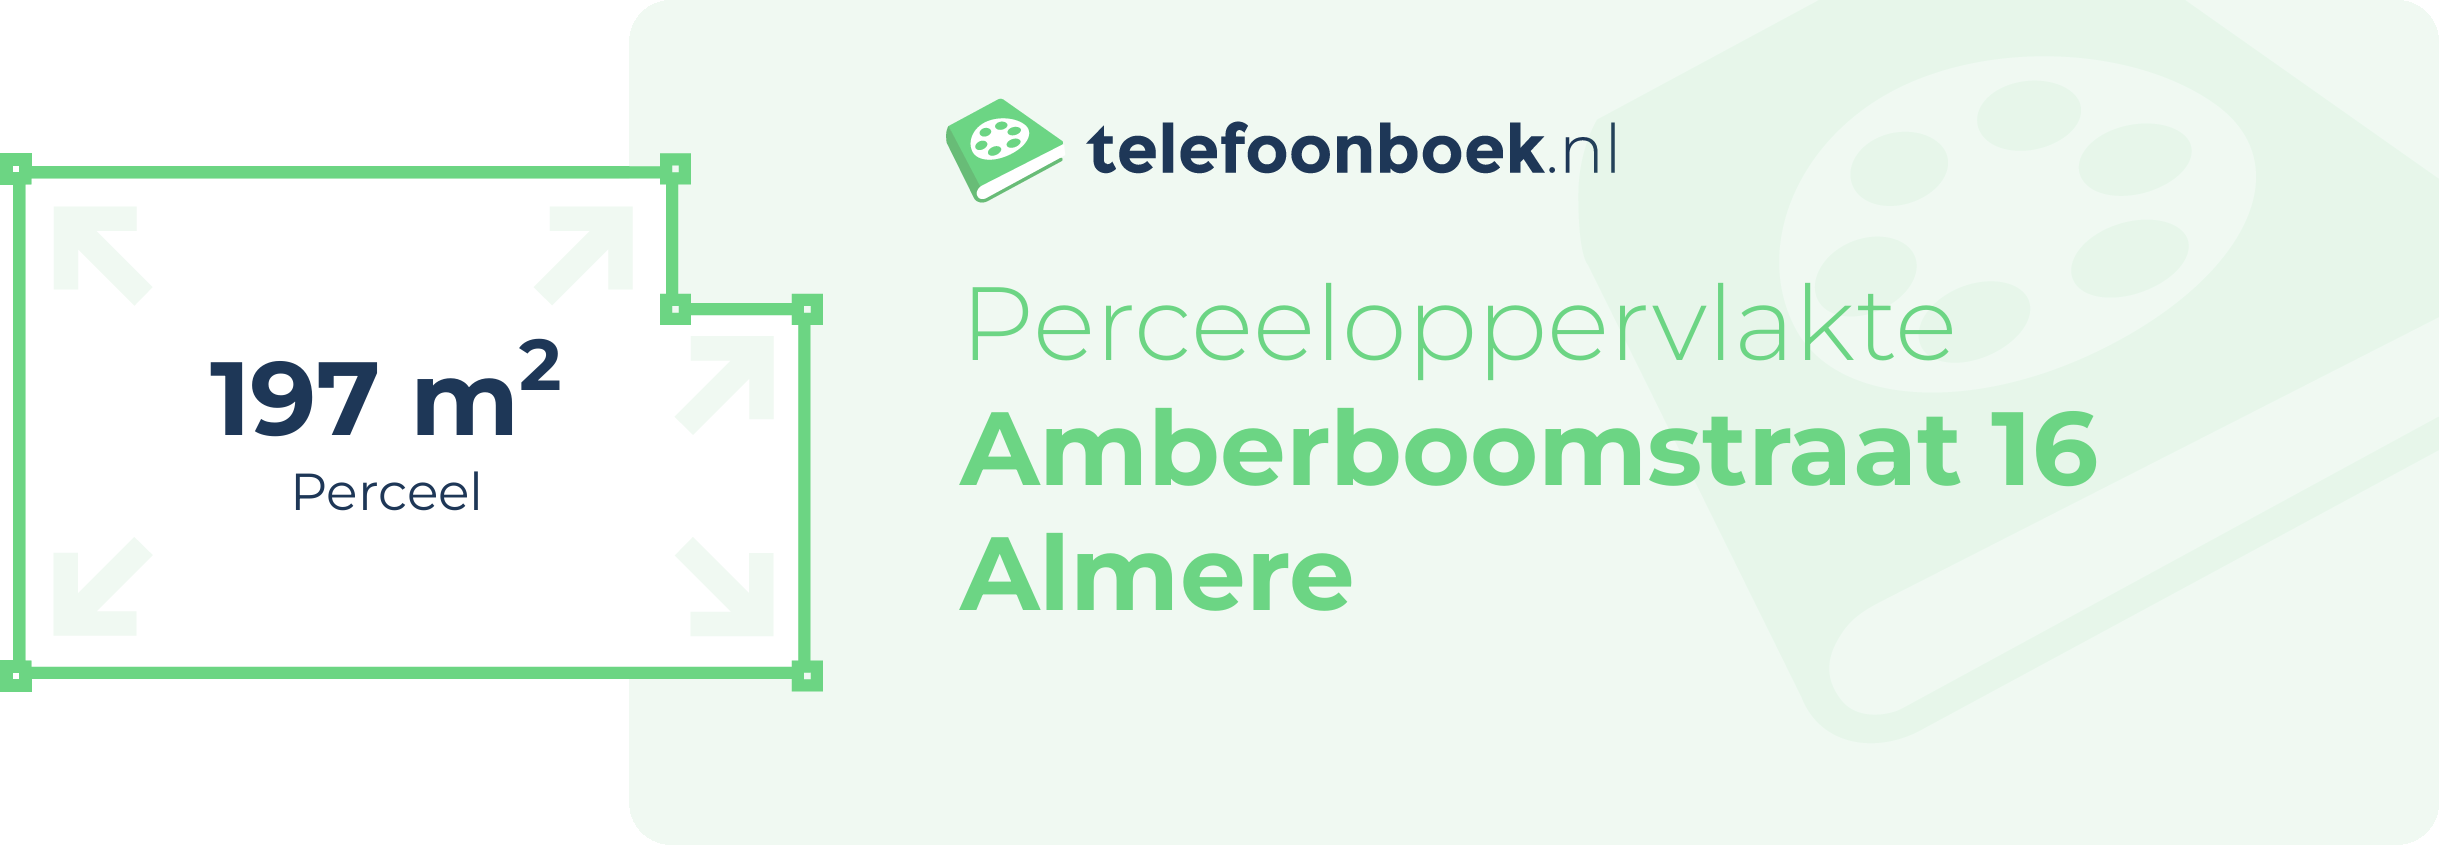 Perceeloppervlakte Amberboomstraat 16 Almere